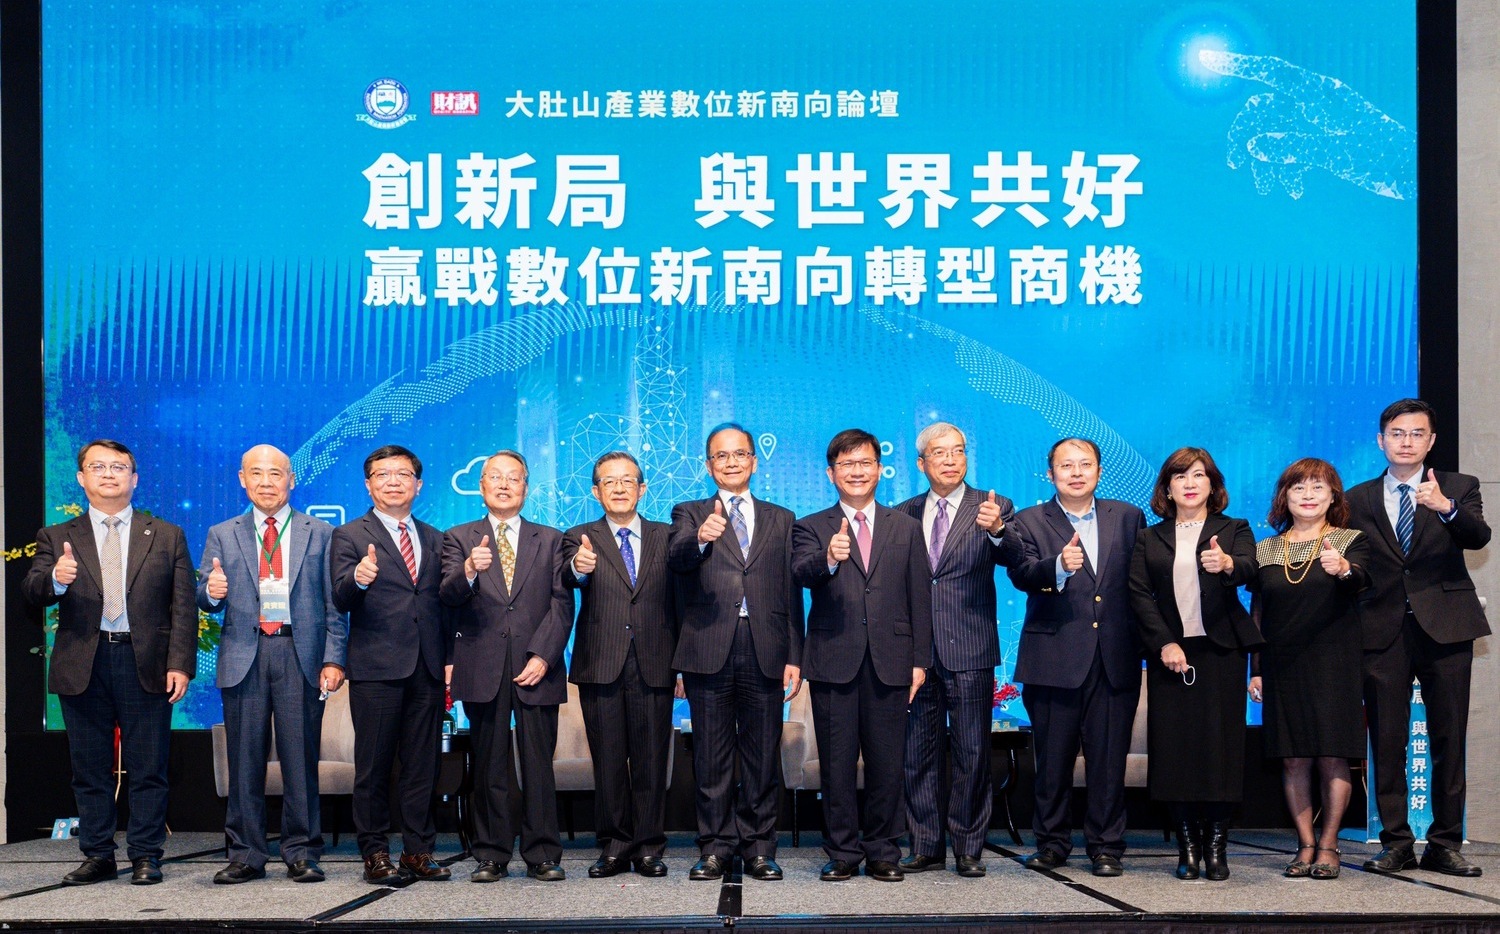 林佳龍：透過產業創新與數位轉型延伸台灣國際影響力 | 政治 | Newt